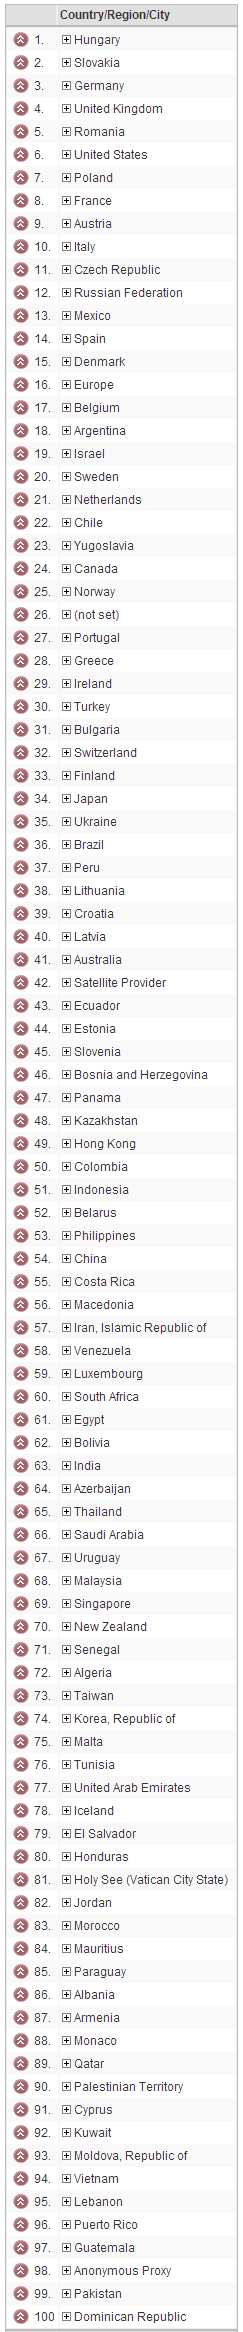 Látogatók országainak listája